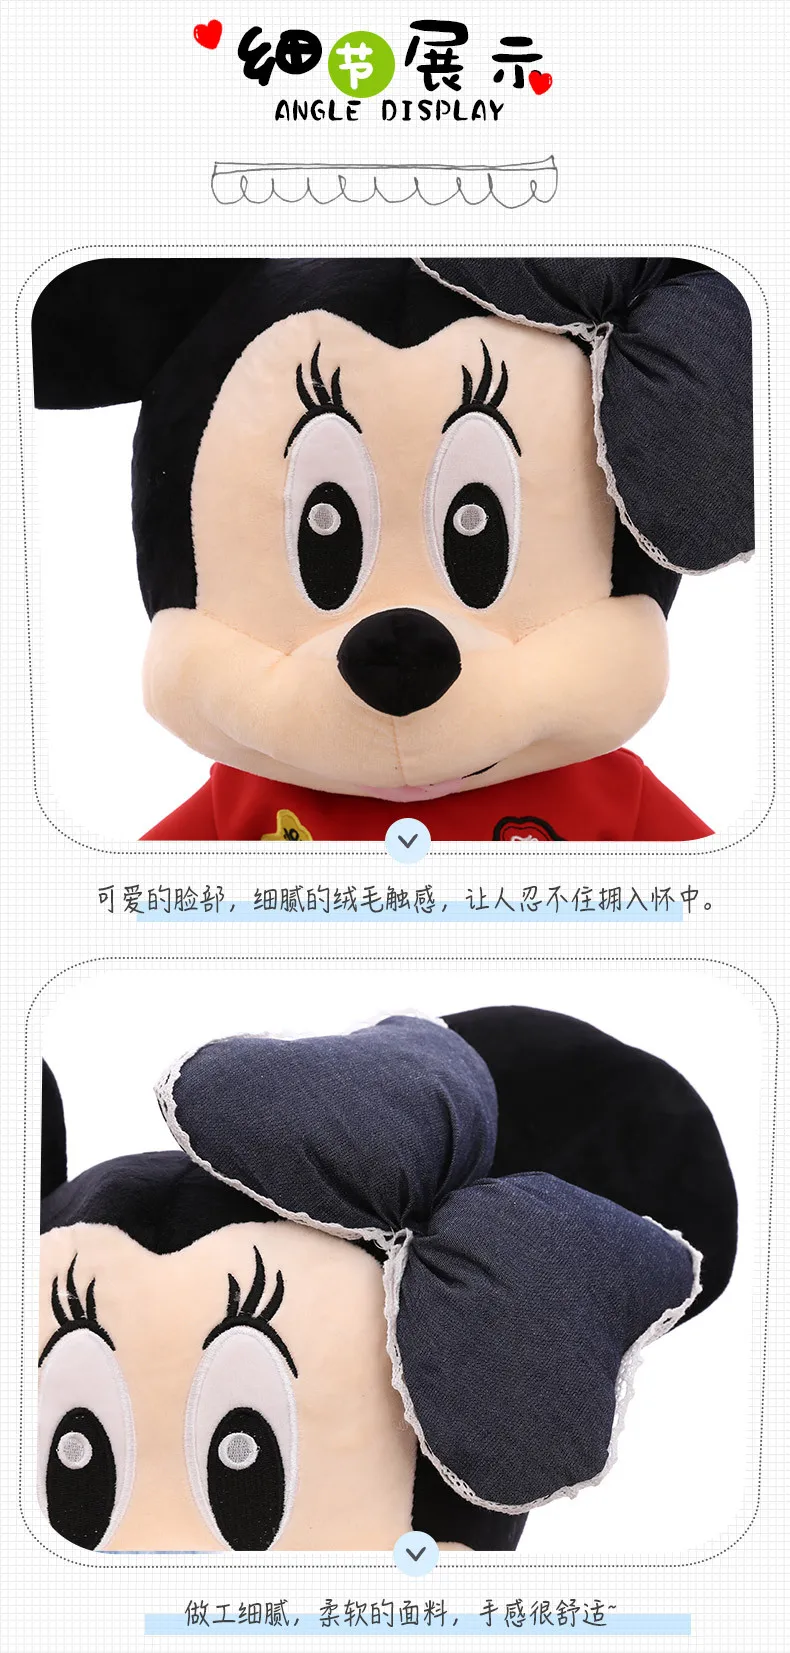 55-100 см милые плюшевые игрушки Микки и Минни высокого качества Мягкая Милая подушка в стиле аниме куклы мышки классические подарки для девочек